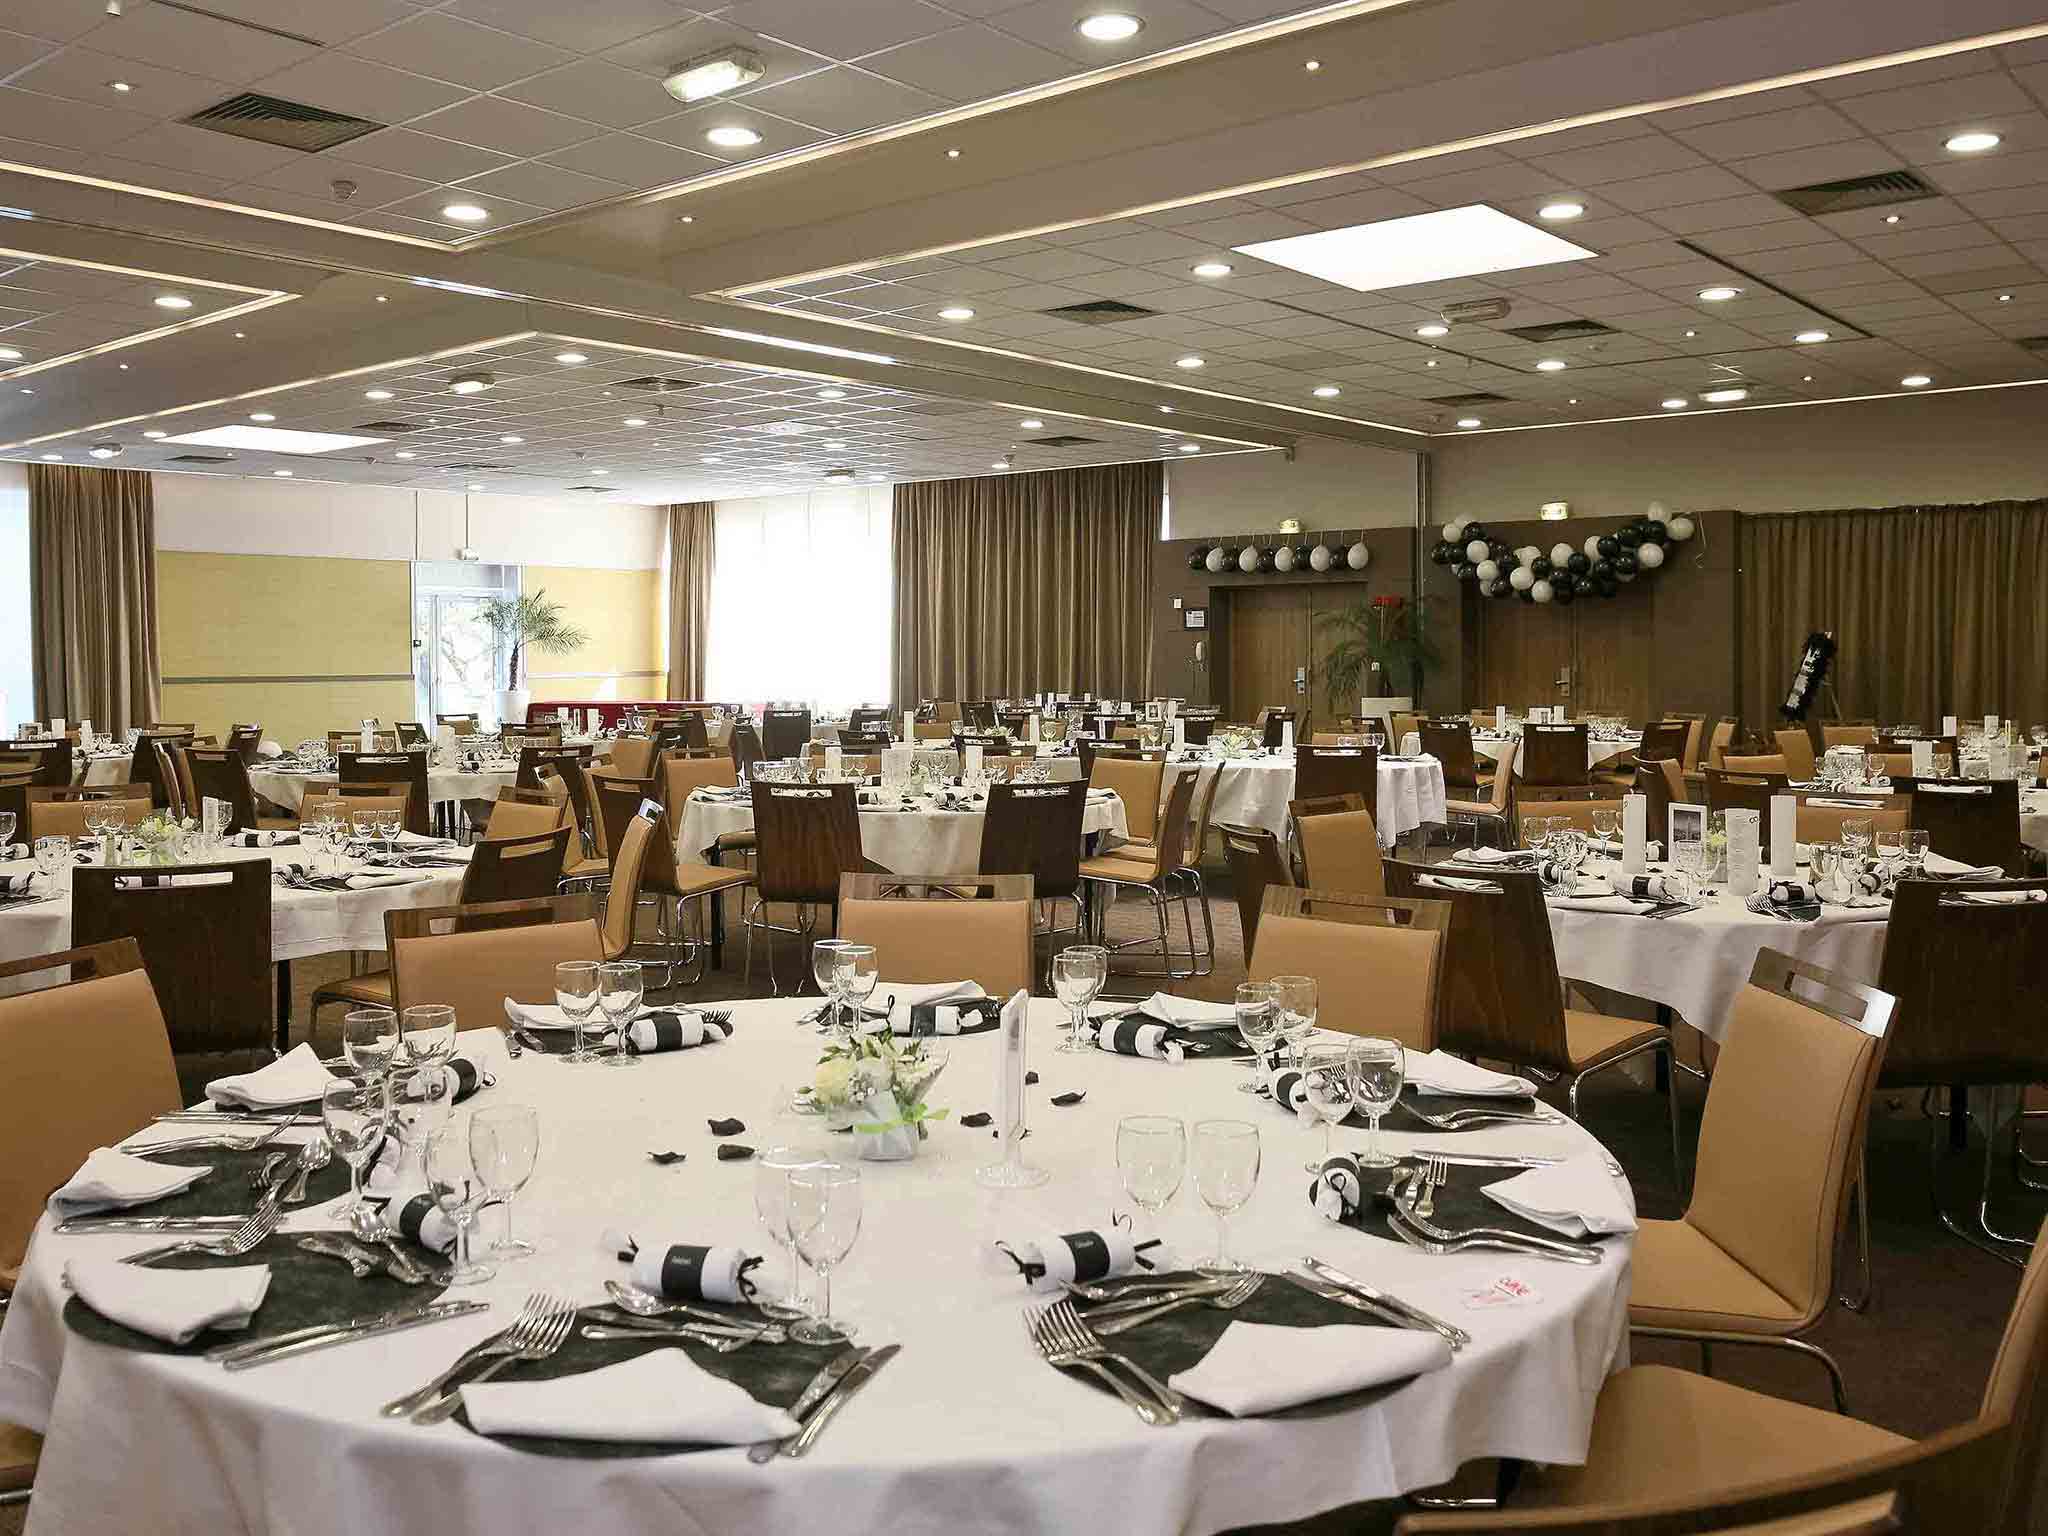 Séminaires Business Events vous présente un banquet dans une salle en intérieure